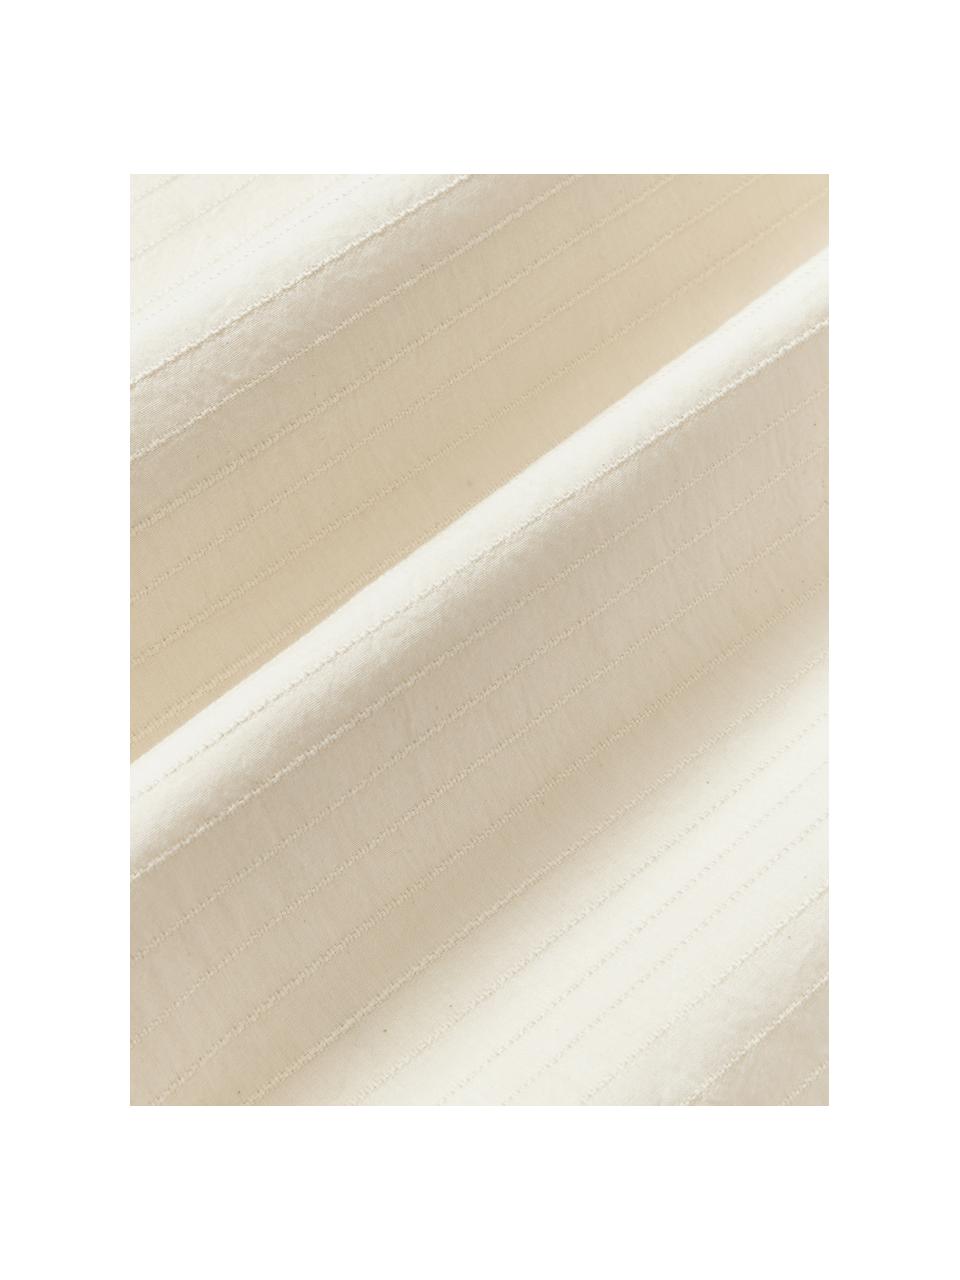 Copripiumino in cotone percalle con raffinato decoro a righe River, Retro: 100% cotone, Bianco latte, Larg. 200 x Lung. 200 cm